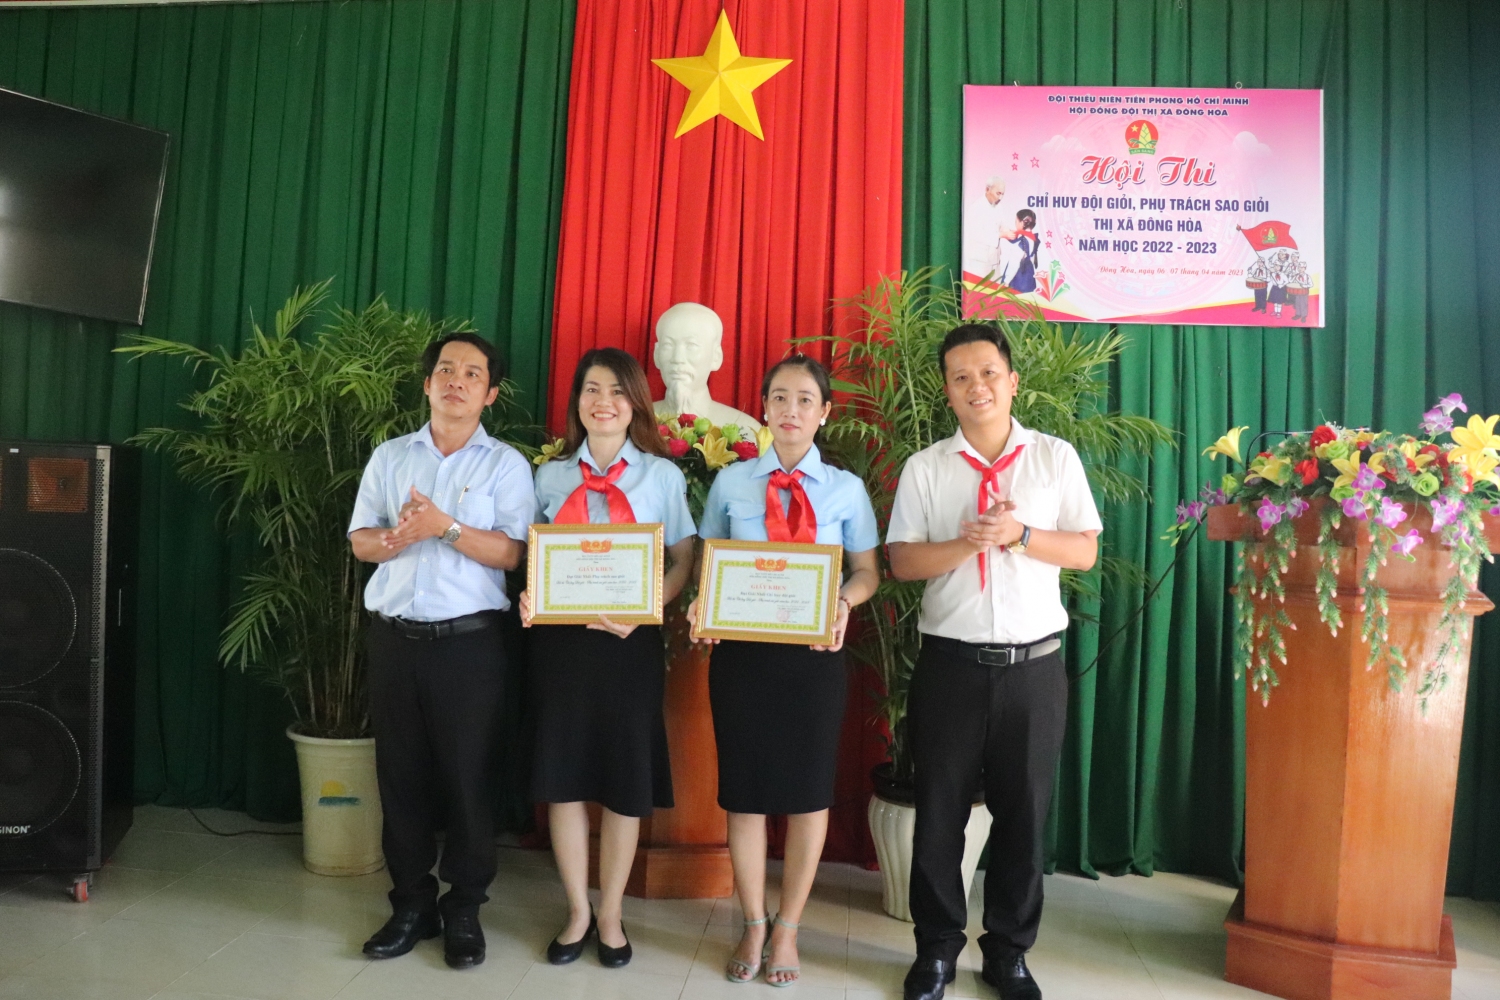 Thị Đoàn Đông Hòa và Phòng GD&ĐT thị xã trao giải nhất Hội thi cho trường THCS Nguyễn Chí Thanh và Tiểu học Phạm Văn Đồng